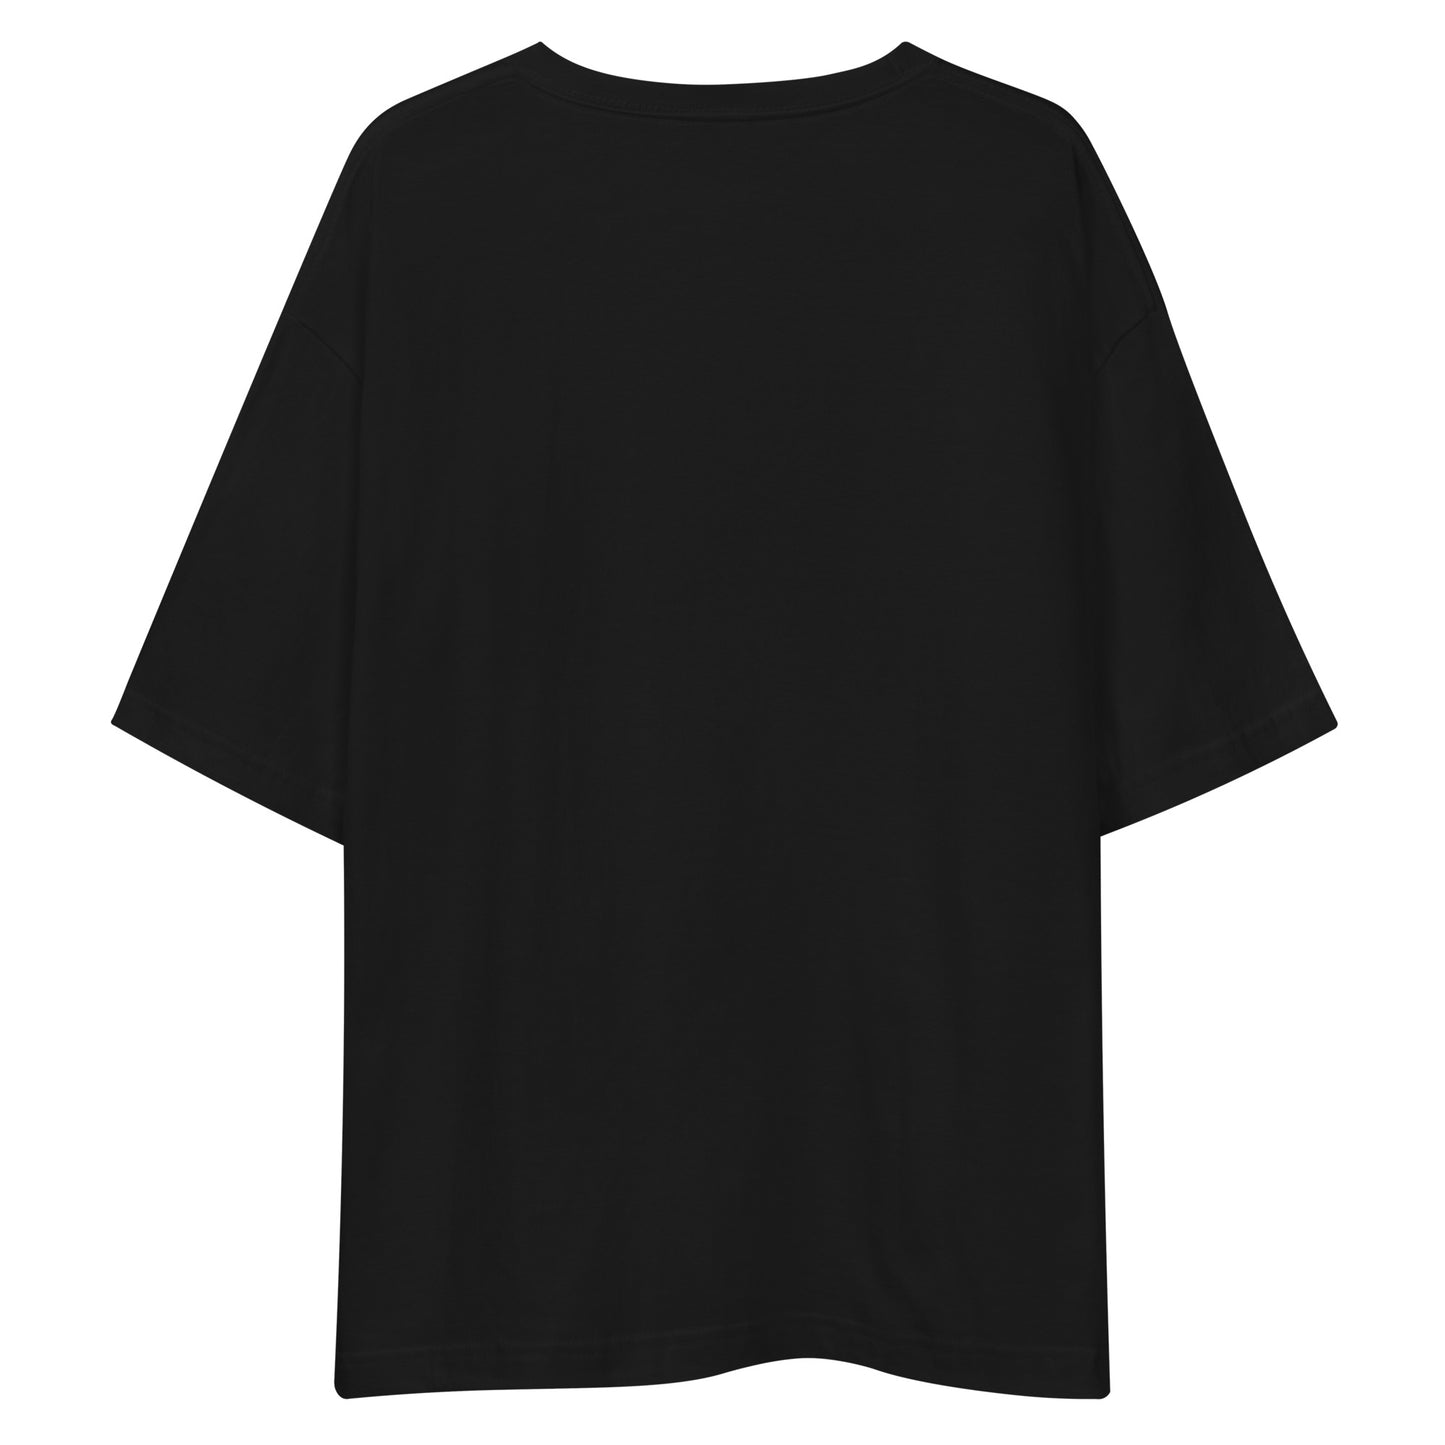 E225 - Tシャツ/ビッグシルエット(ユニバーサルジャンプ/女子 : ブラック/シルバー)